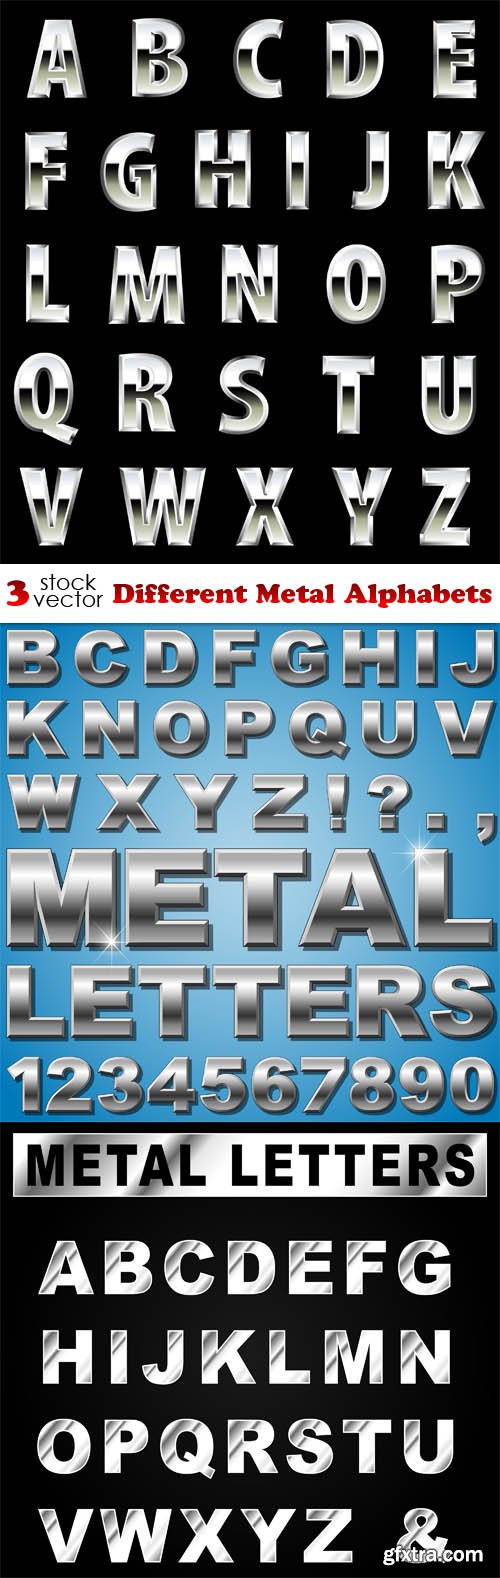 Vectors - Different Metal Alphabets